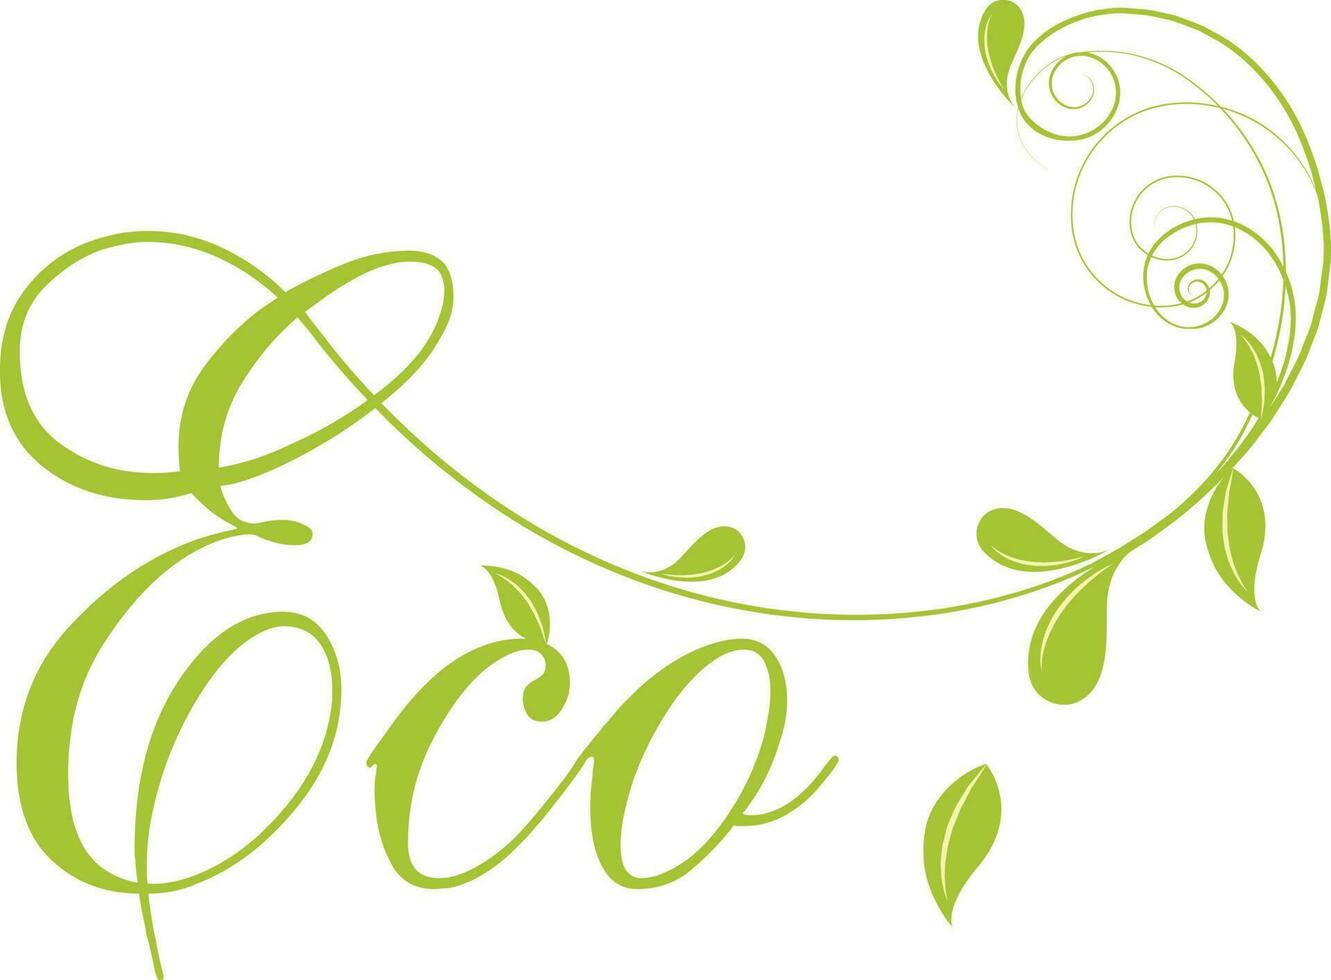 groen tekst eco met bloemen bladeren. vector